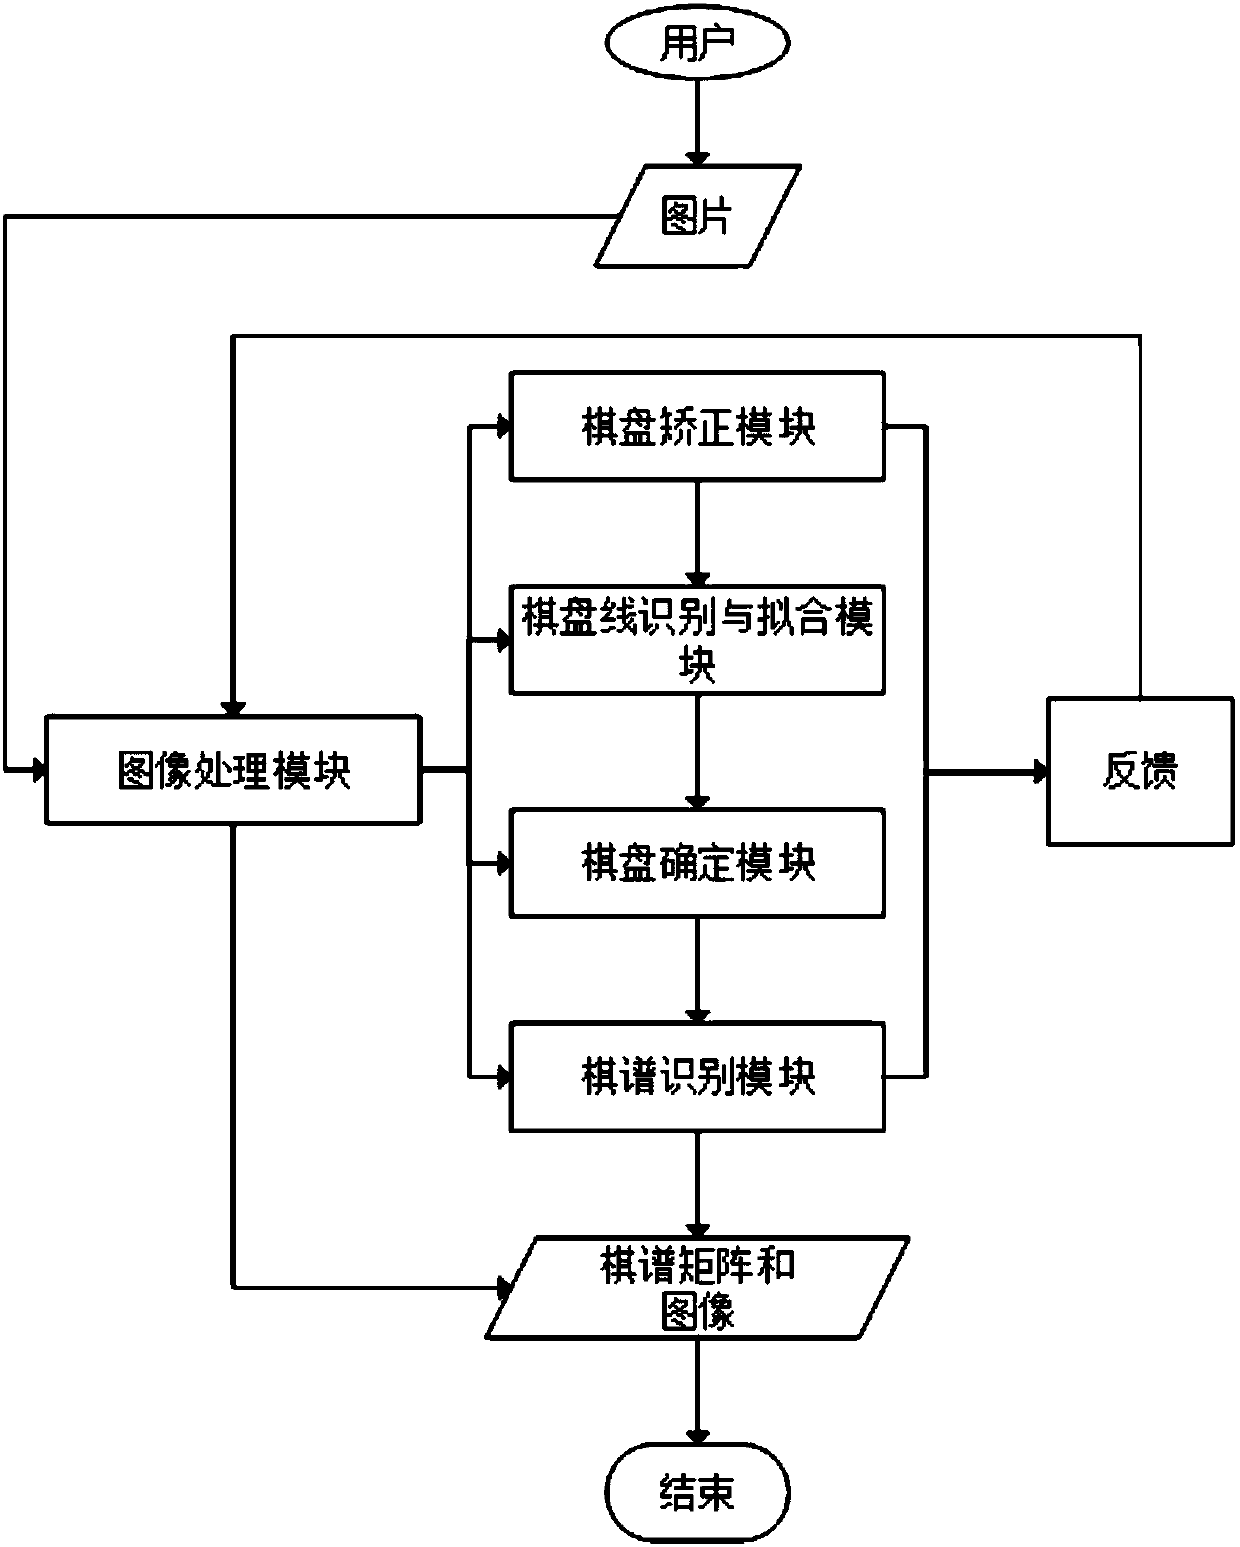 Image-based weiqi manual identification method